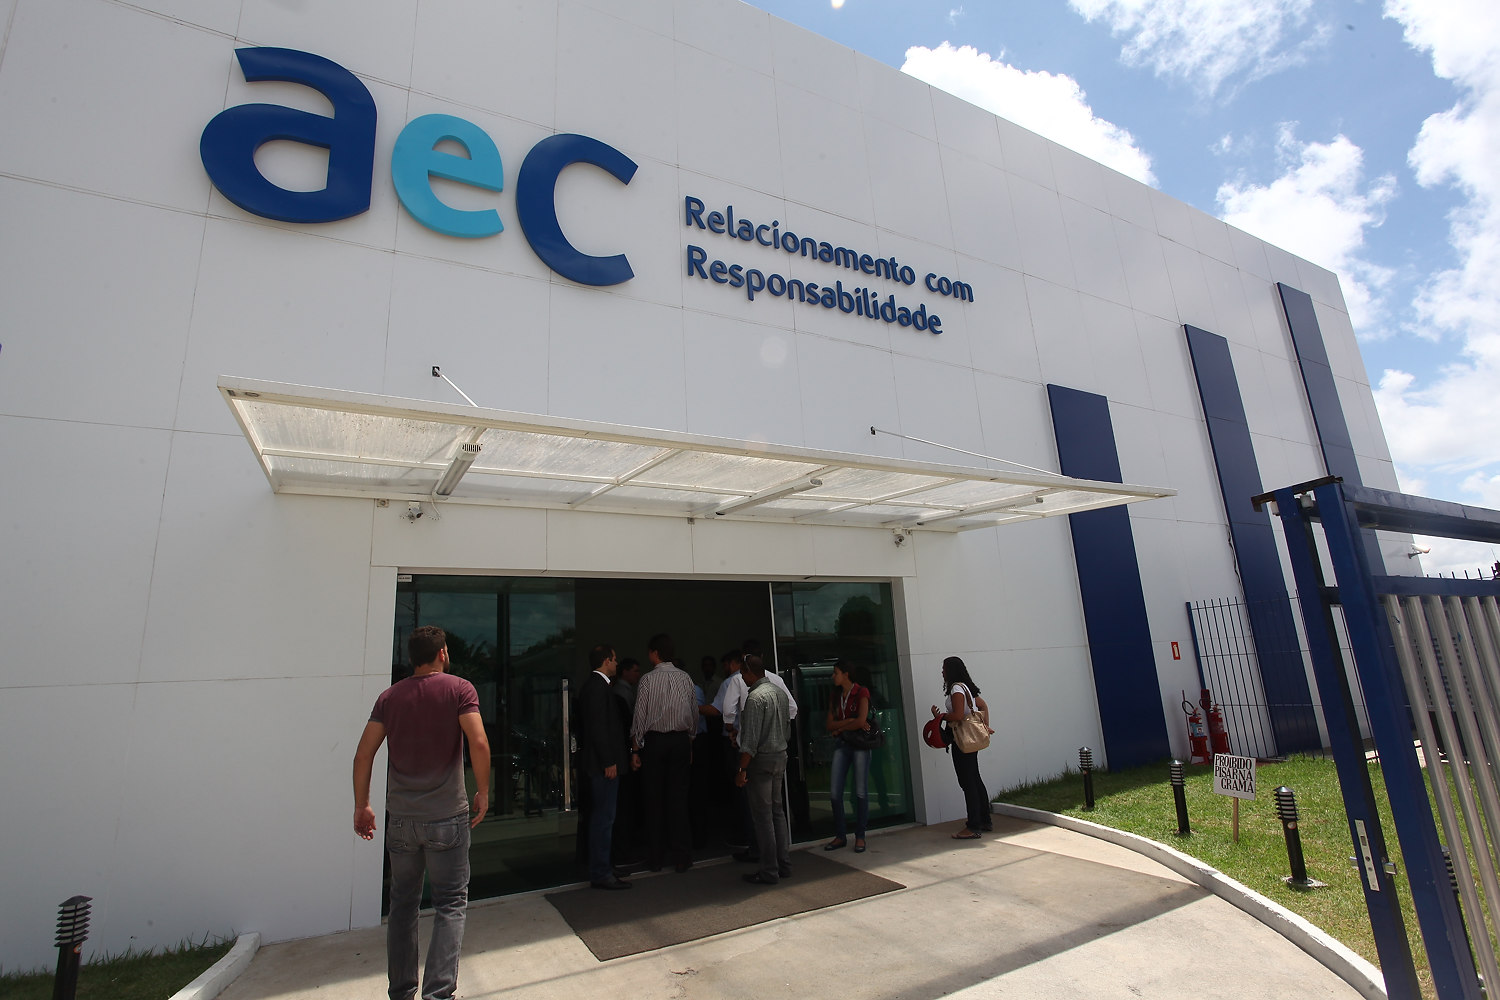 AeC - Relacionamento com Responsabilidade - AEC GOVERNADOR VALADARES  CONTRATA! Venha fazer parte da família AeC. Envie seu currículo para  vagasgv@aec.com.br .